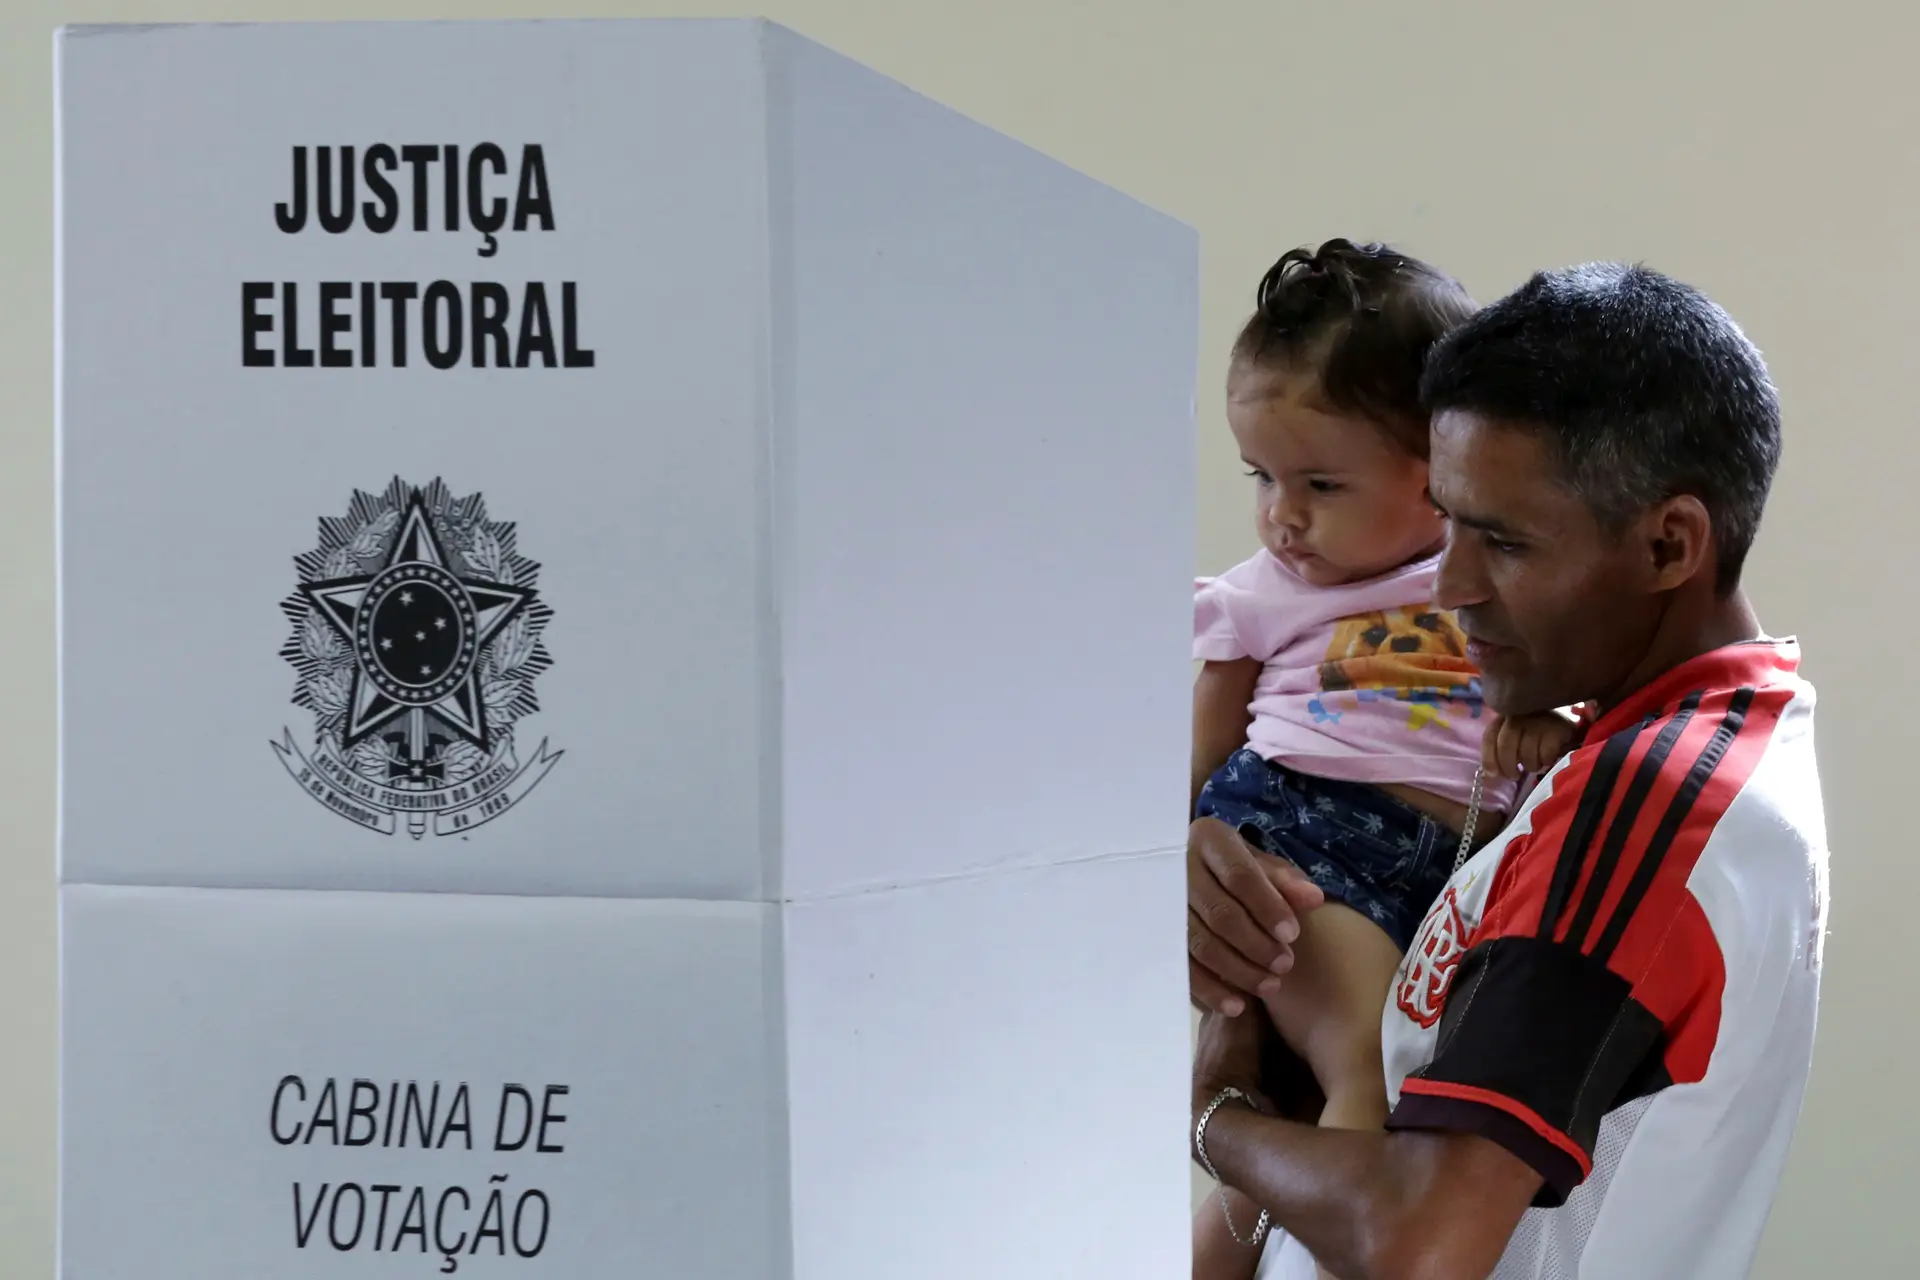 Eleições no Brasil com recorde de eleitores registados, são mais de 156 milhões